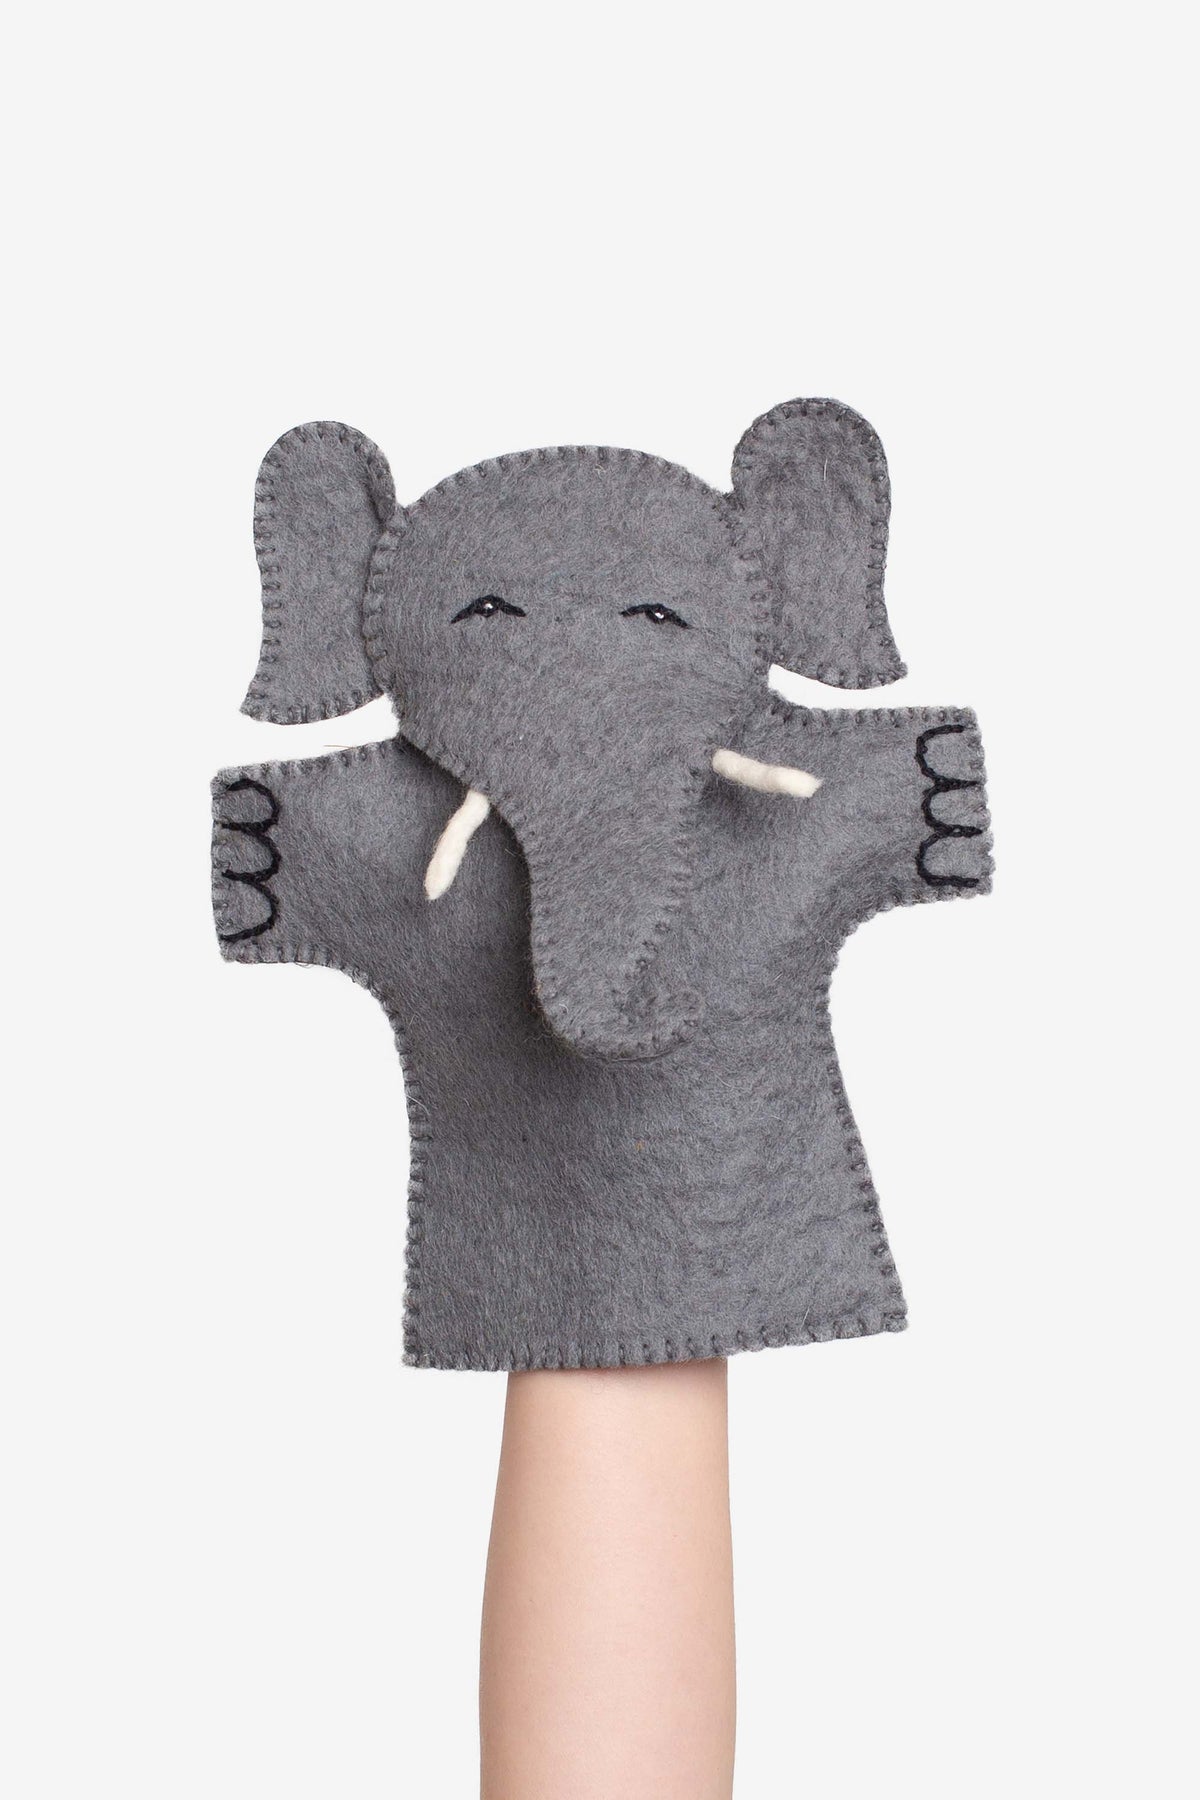 Elephant Puppet - Felt